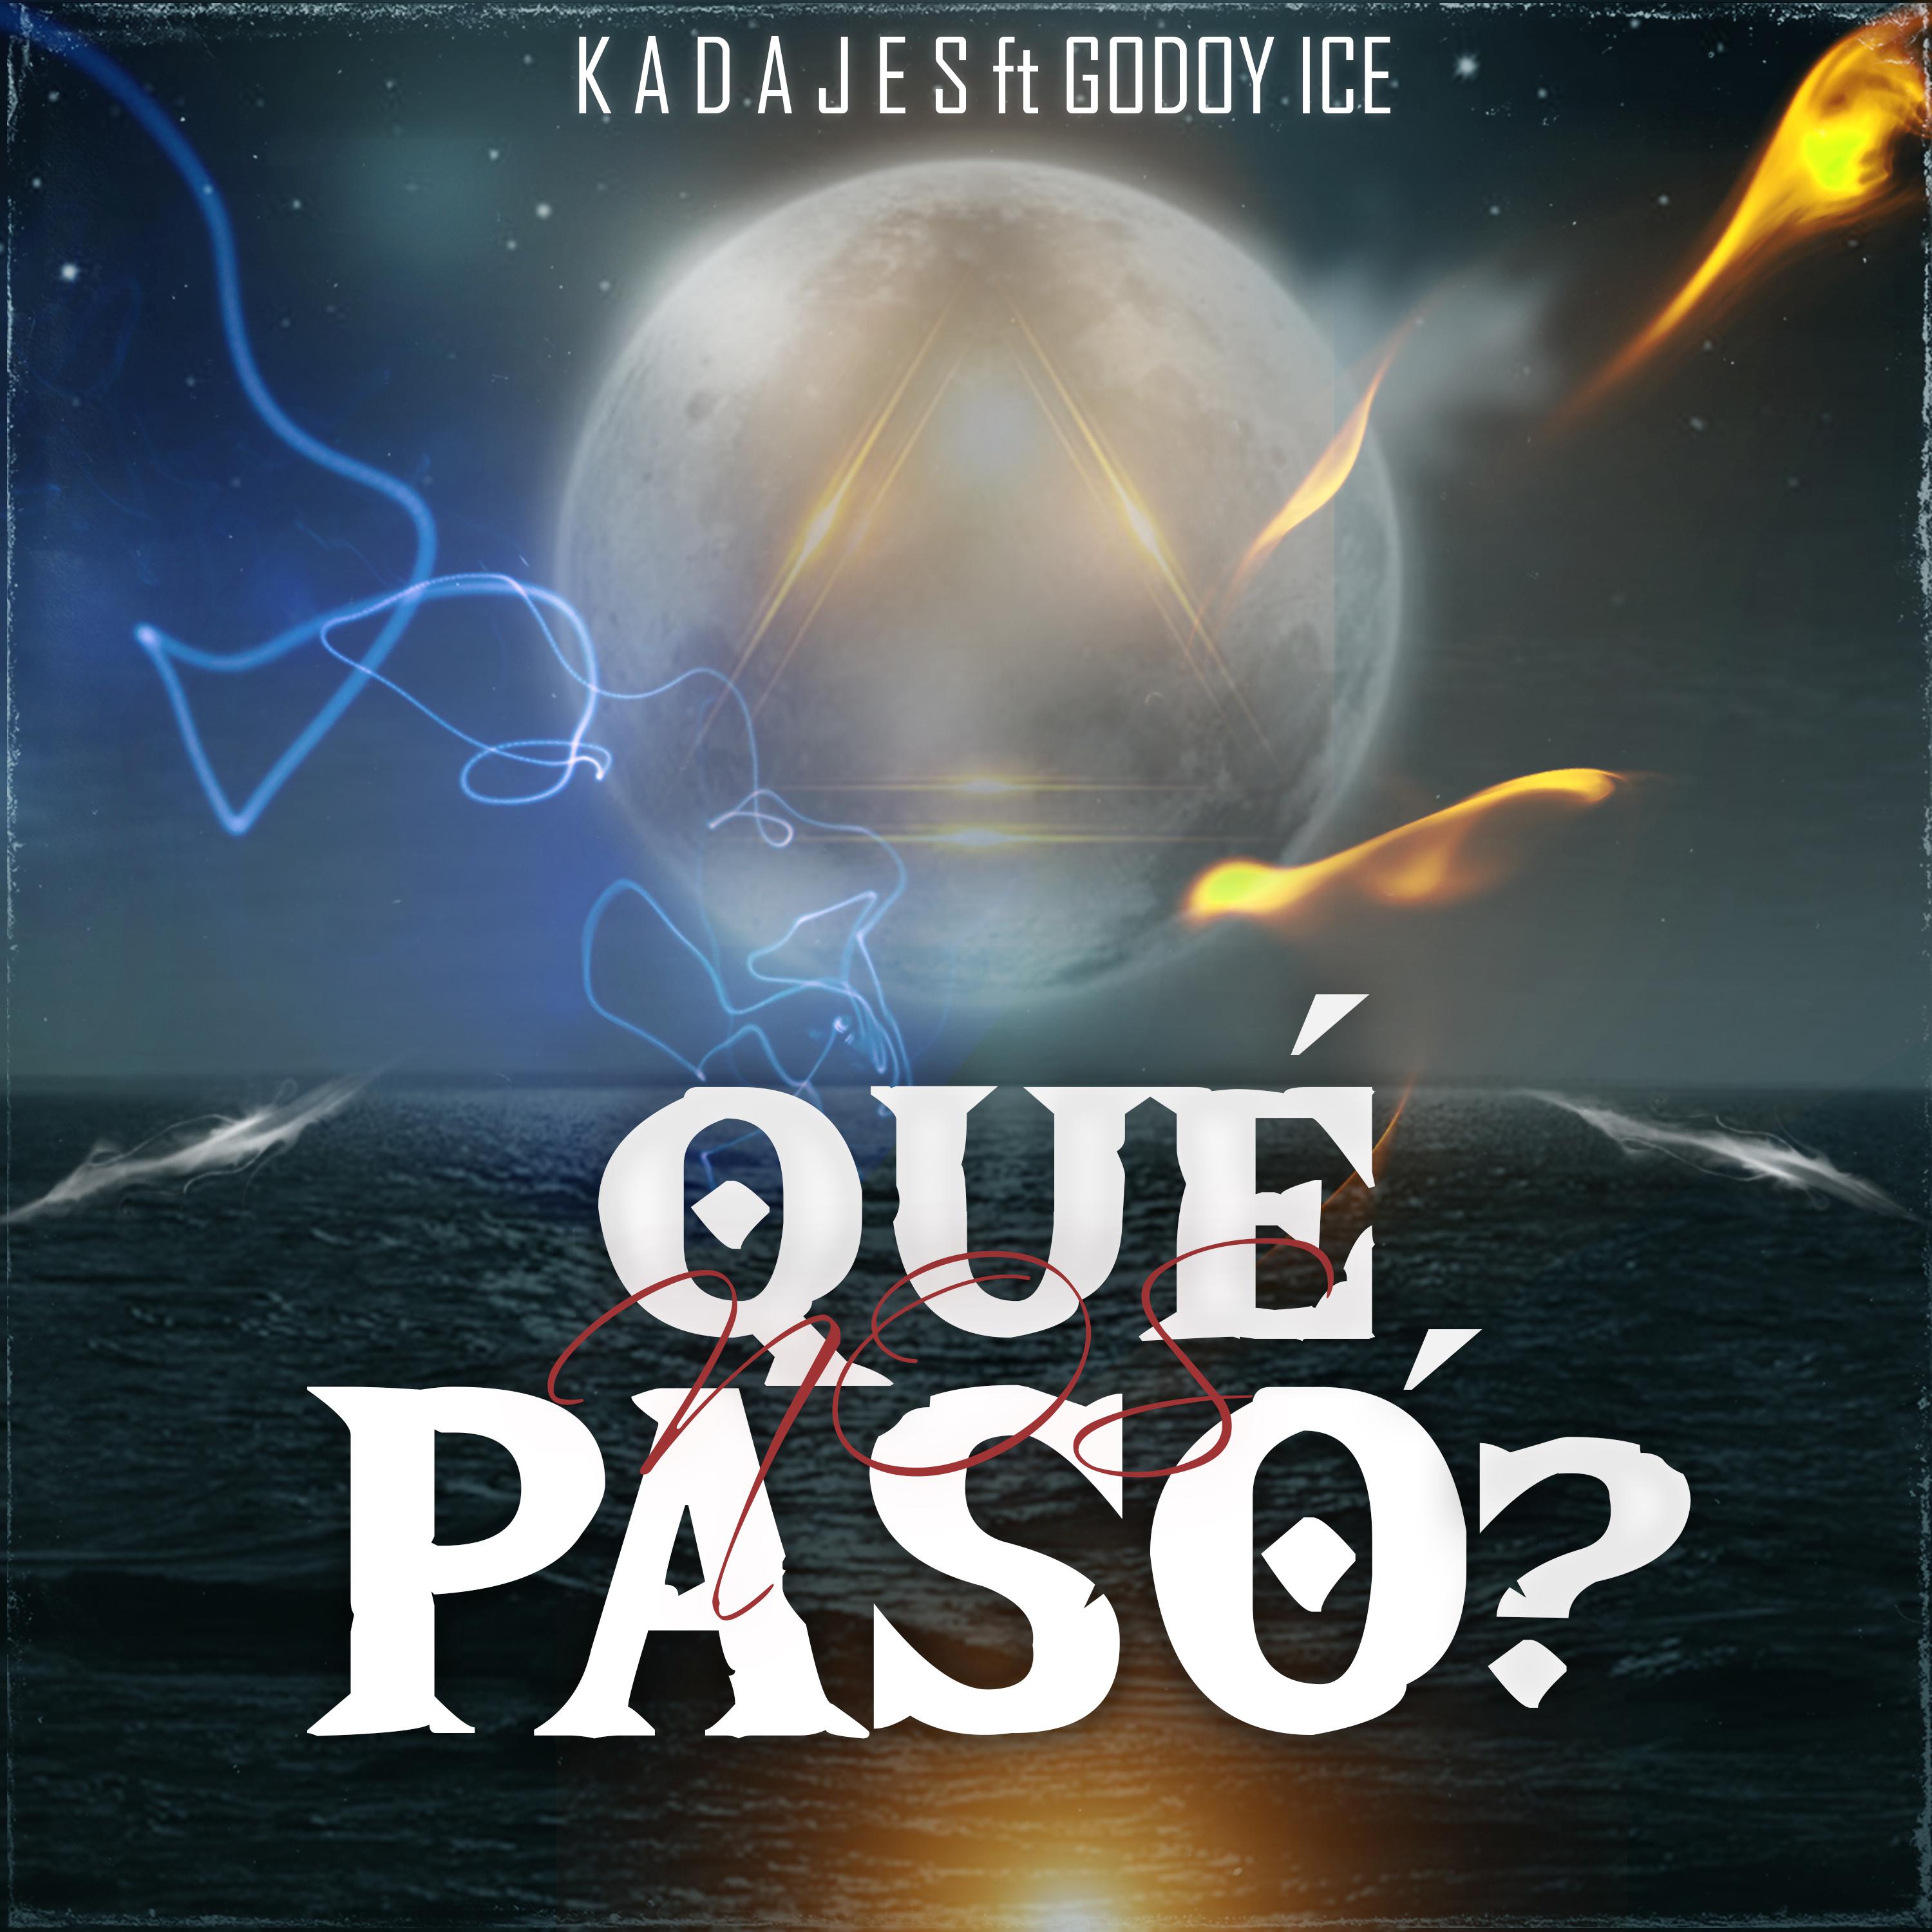 Постер альбома Qué Nos Pasó?